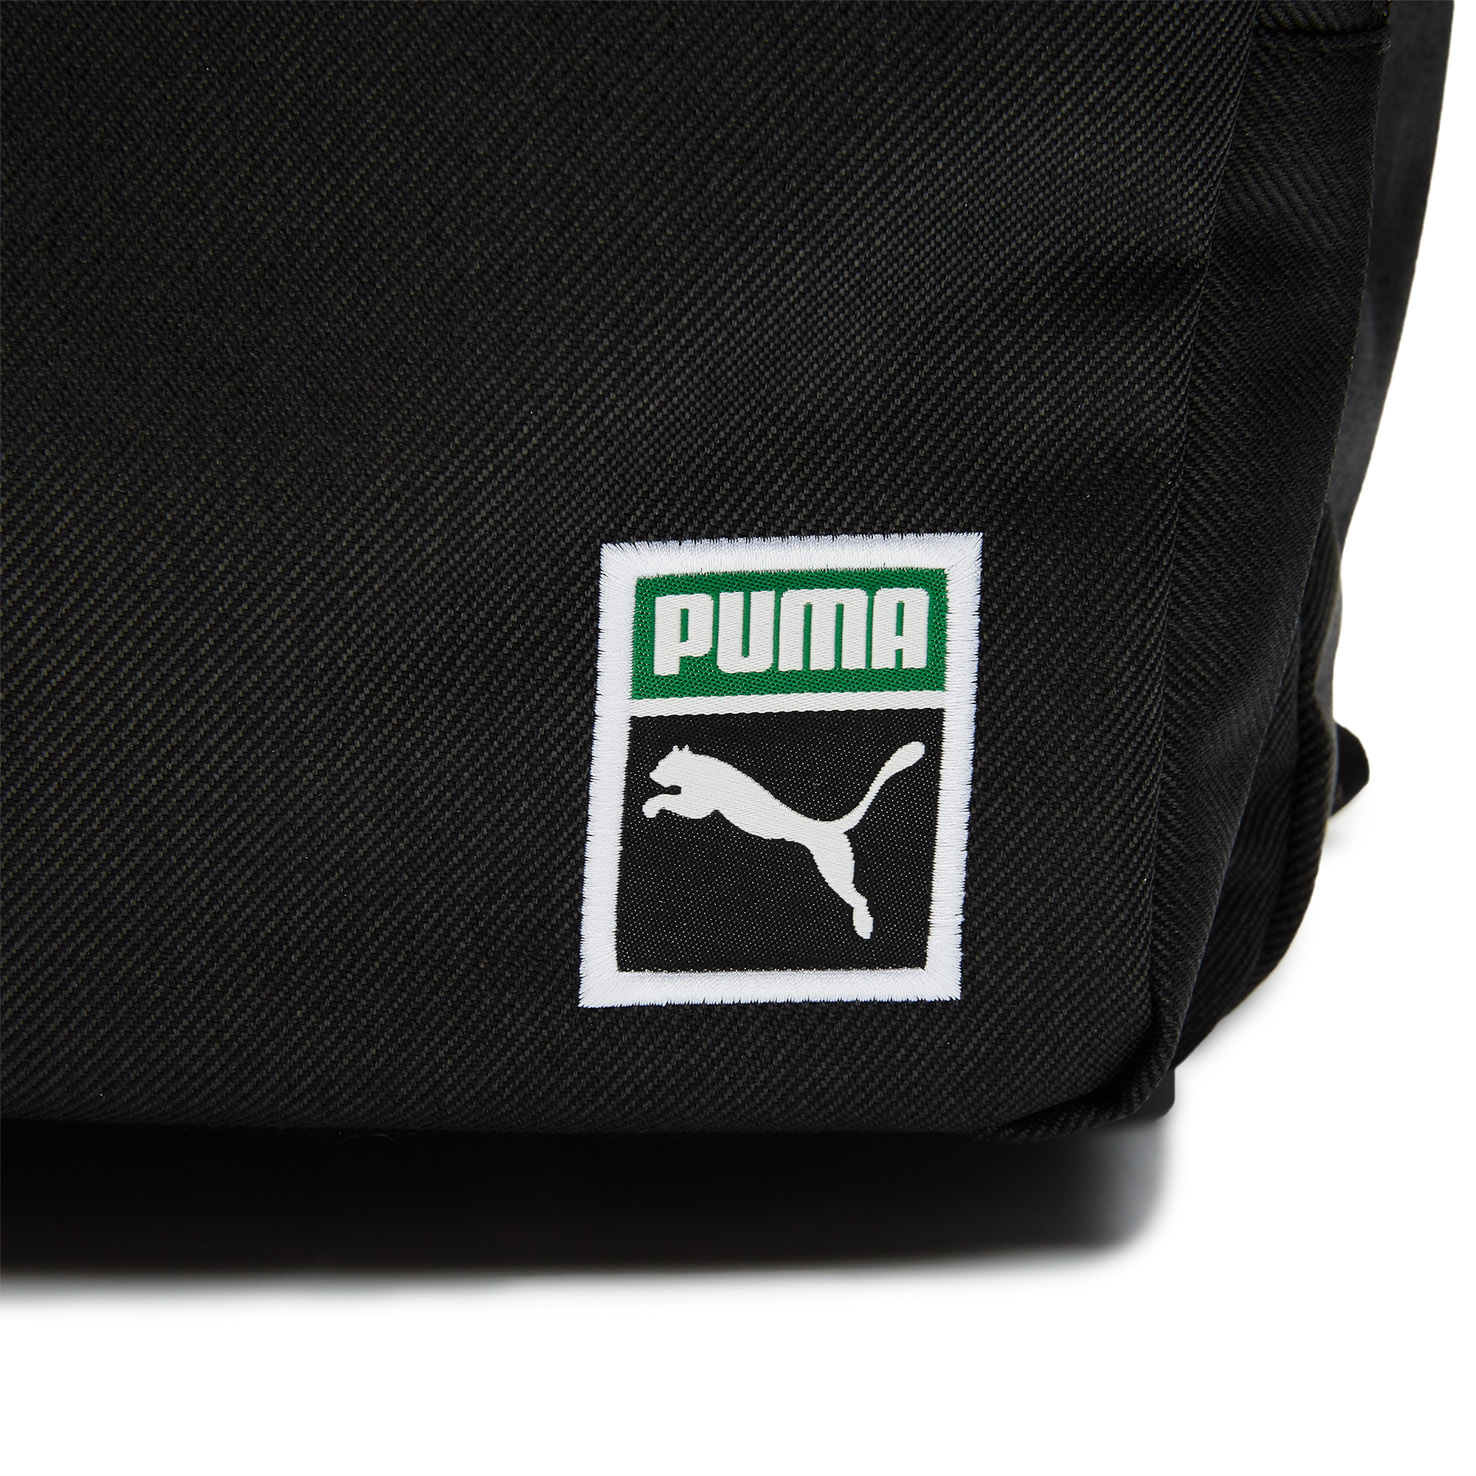 PUMA x PEANUTS Backpack PUMA, размер Один размер, цвет серый PM078009 - фото 4